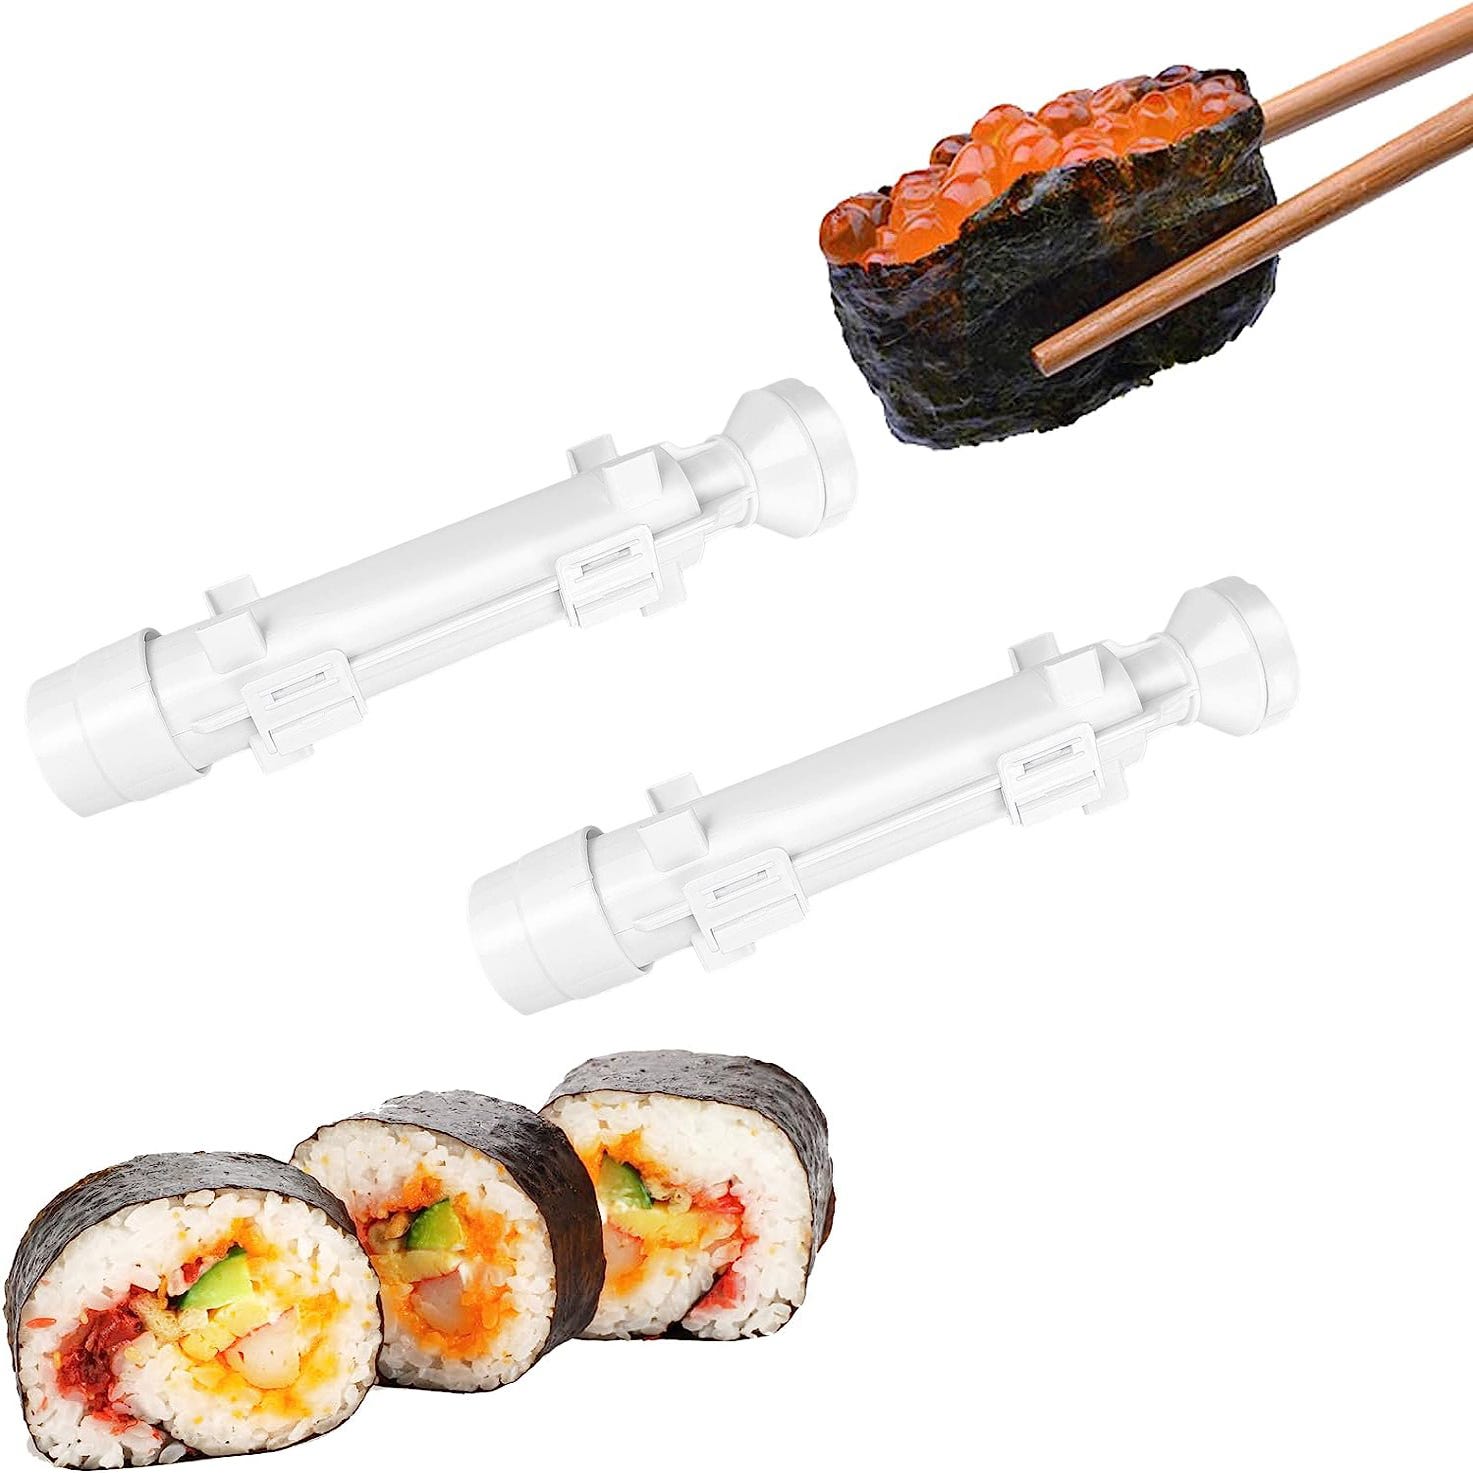 Comment faire des sushis maison avec un appareil à sushi ?